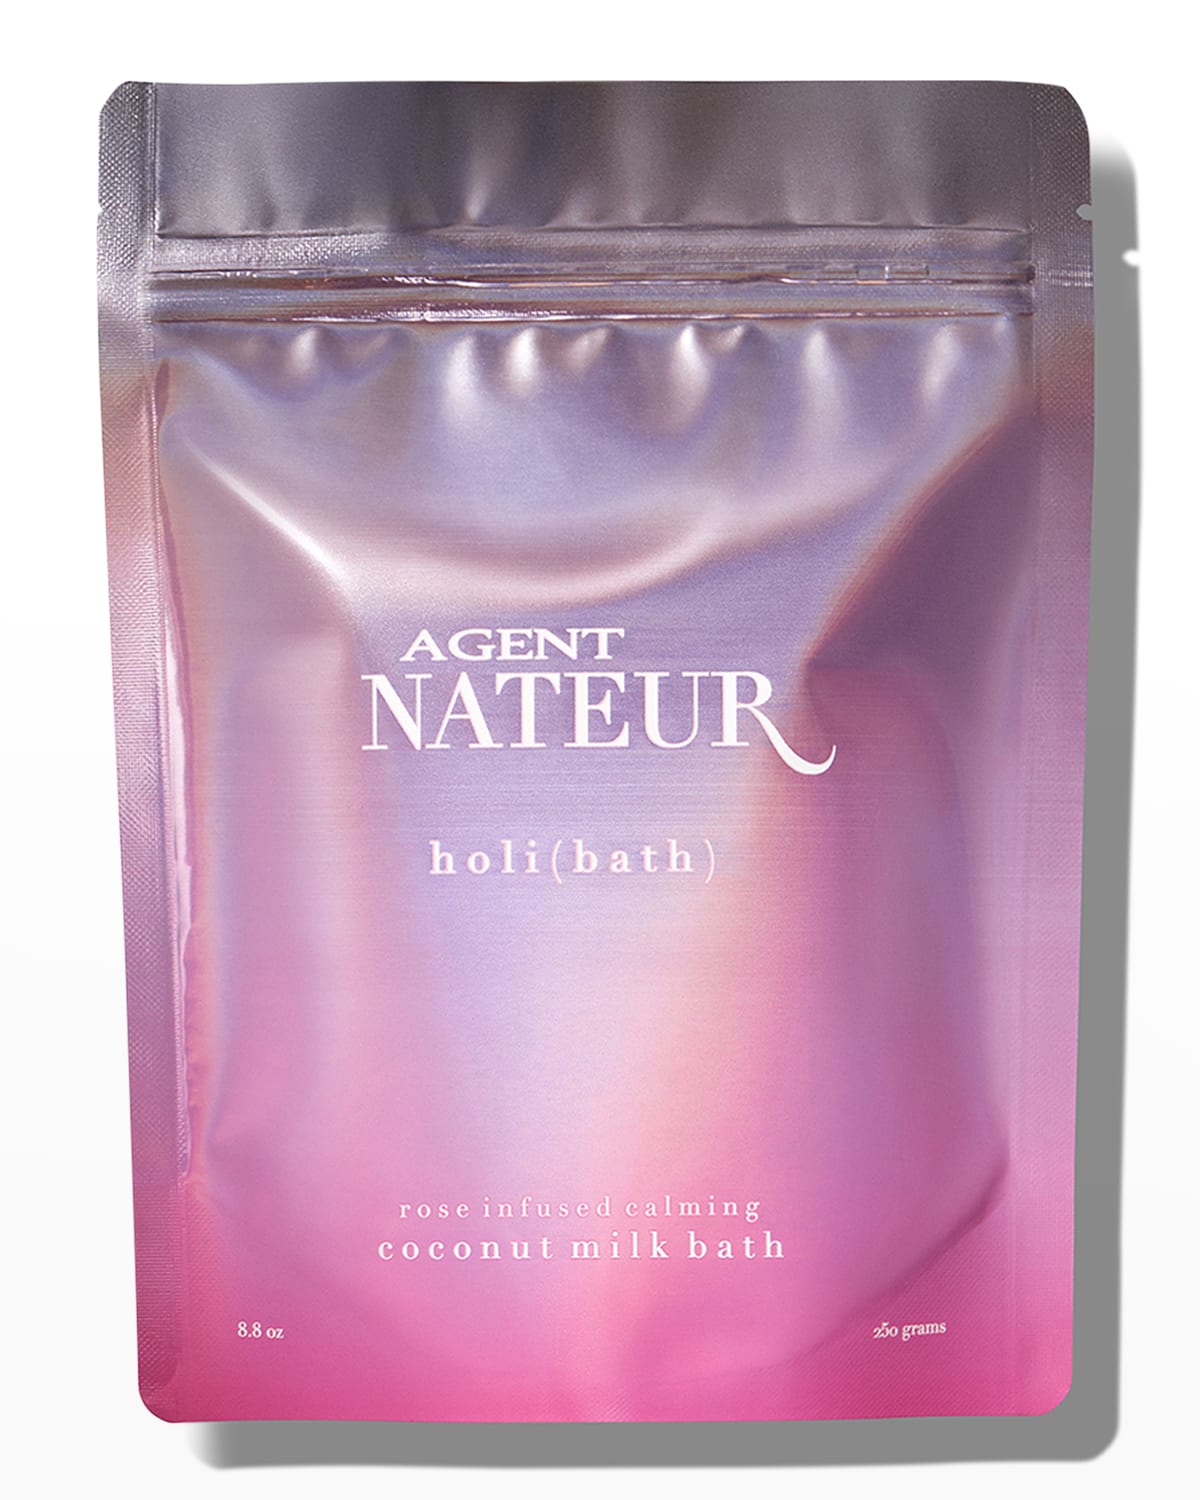 Agent Nateur Holi(bath)